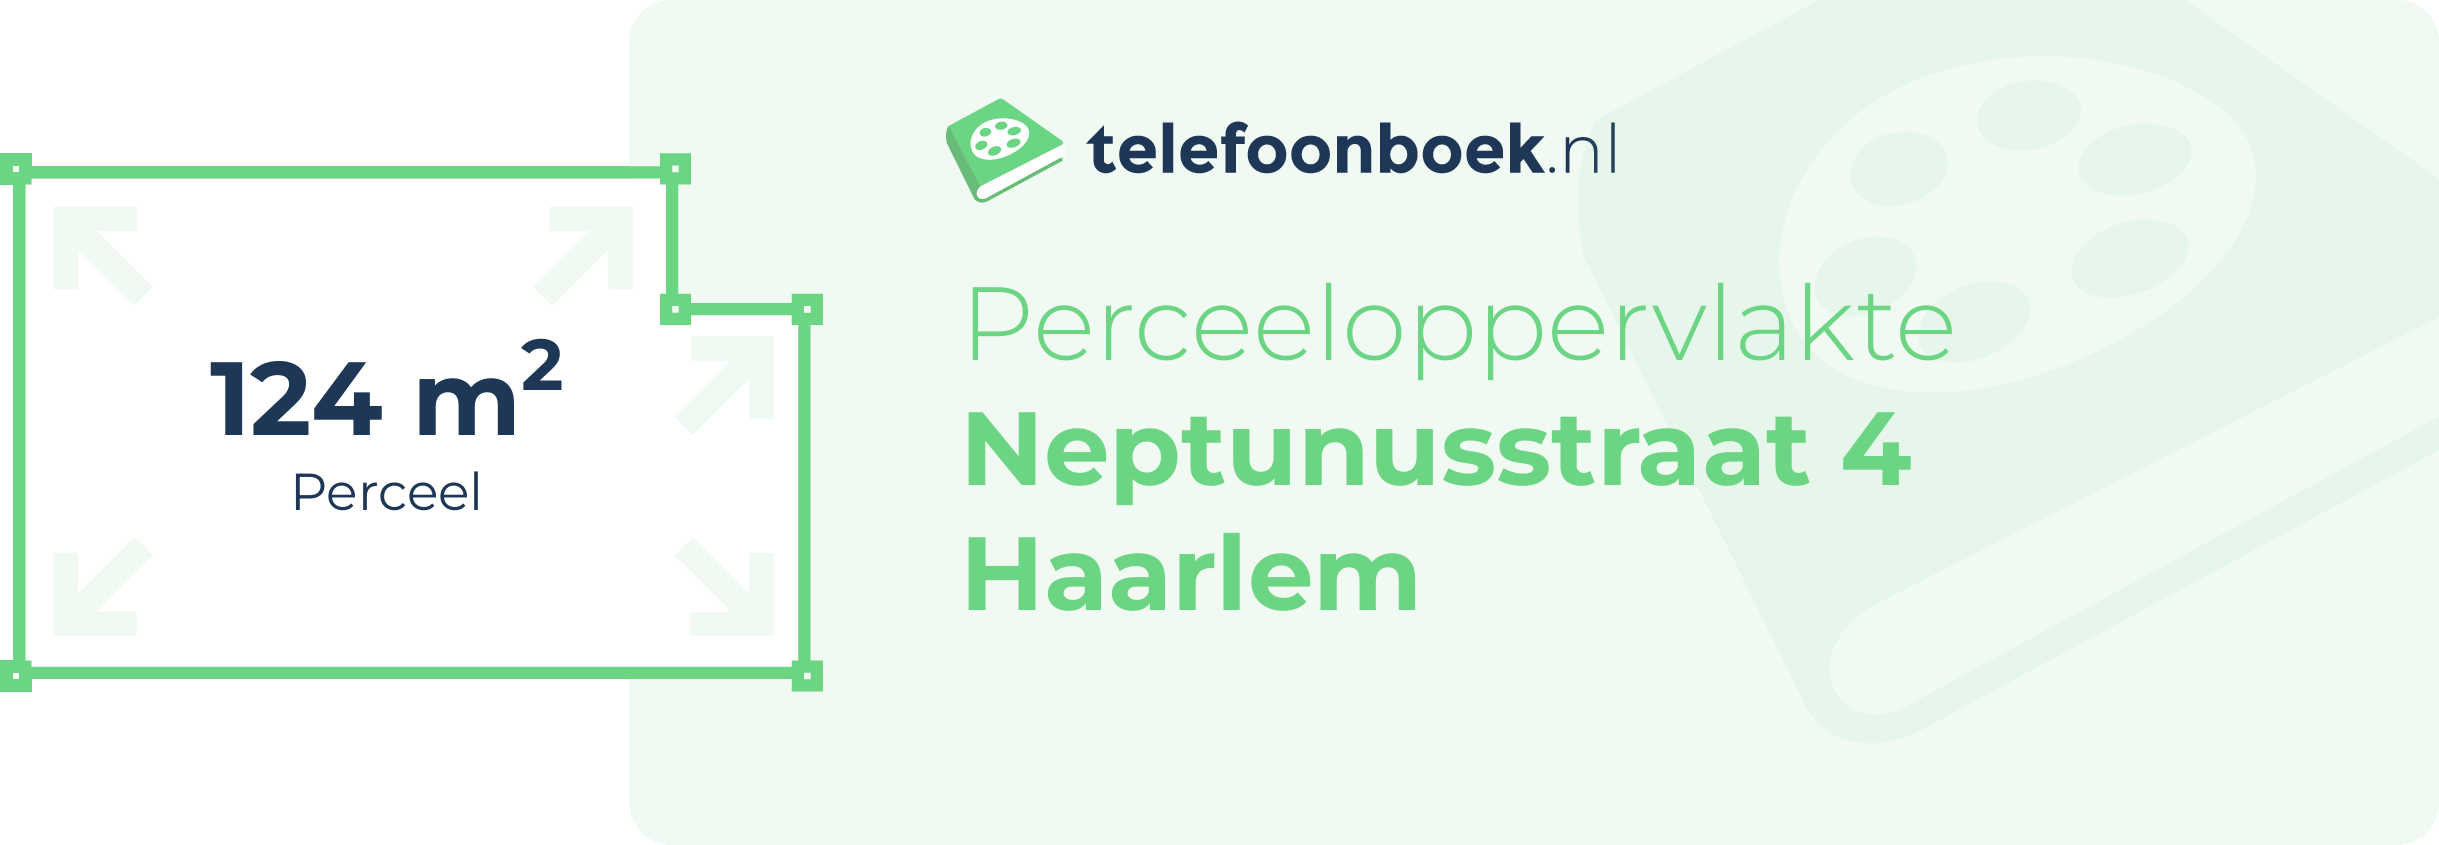 Perceeloppervlakte Neptunusstraat 4 Haarlem